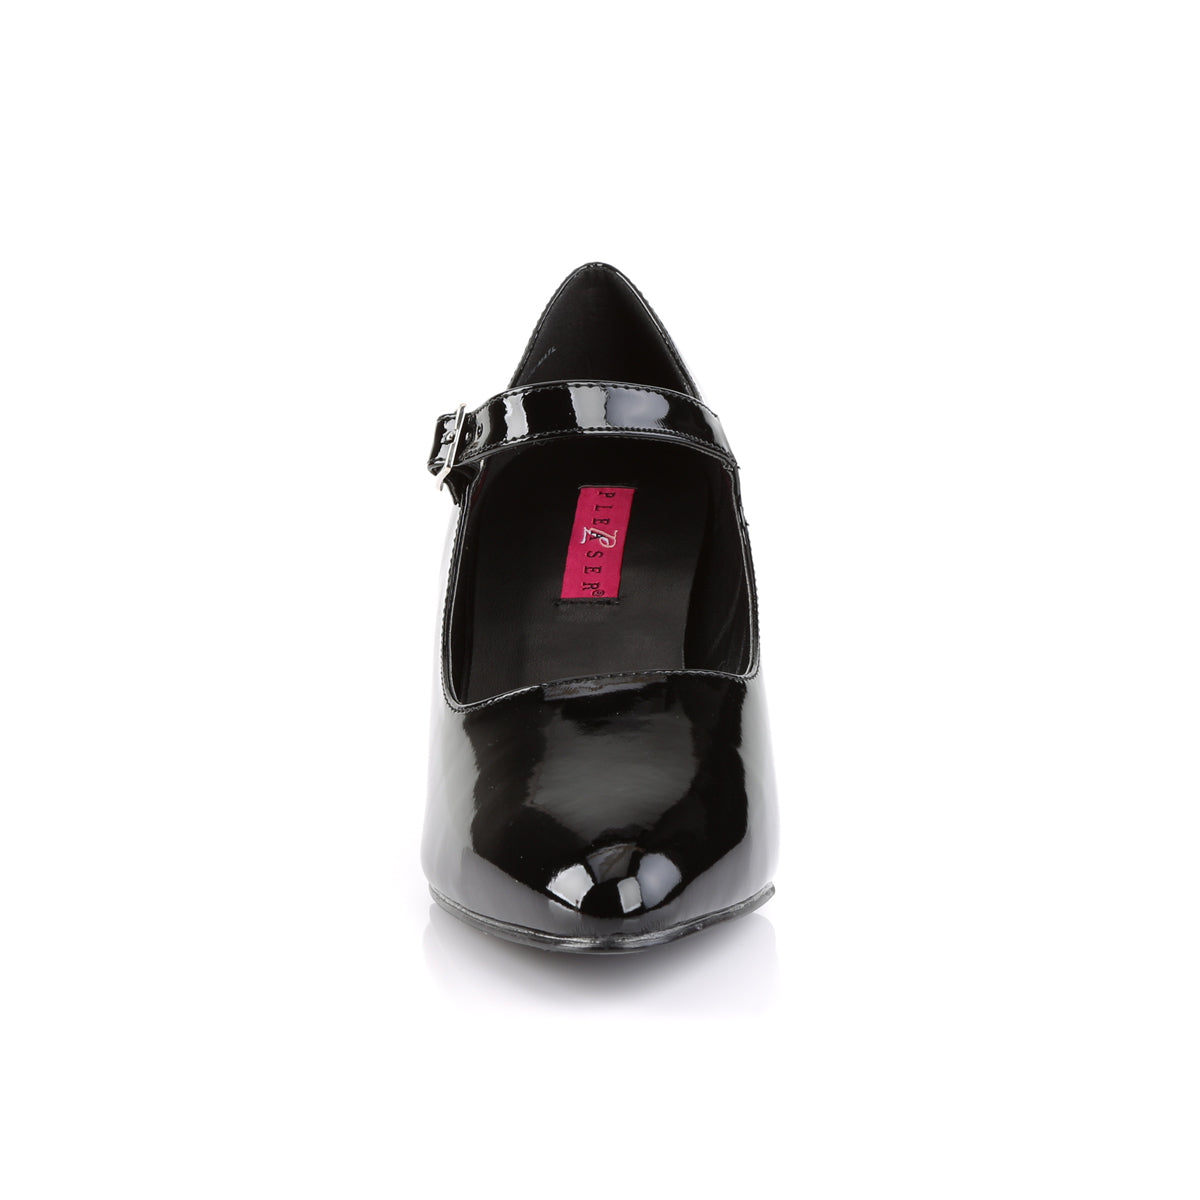 DIVINE-440 Large Size Ladies Shoes Pleaser Pink Label Single Soles Black Pat